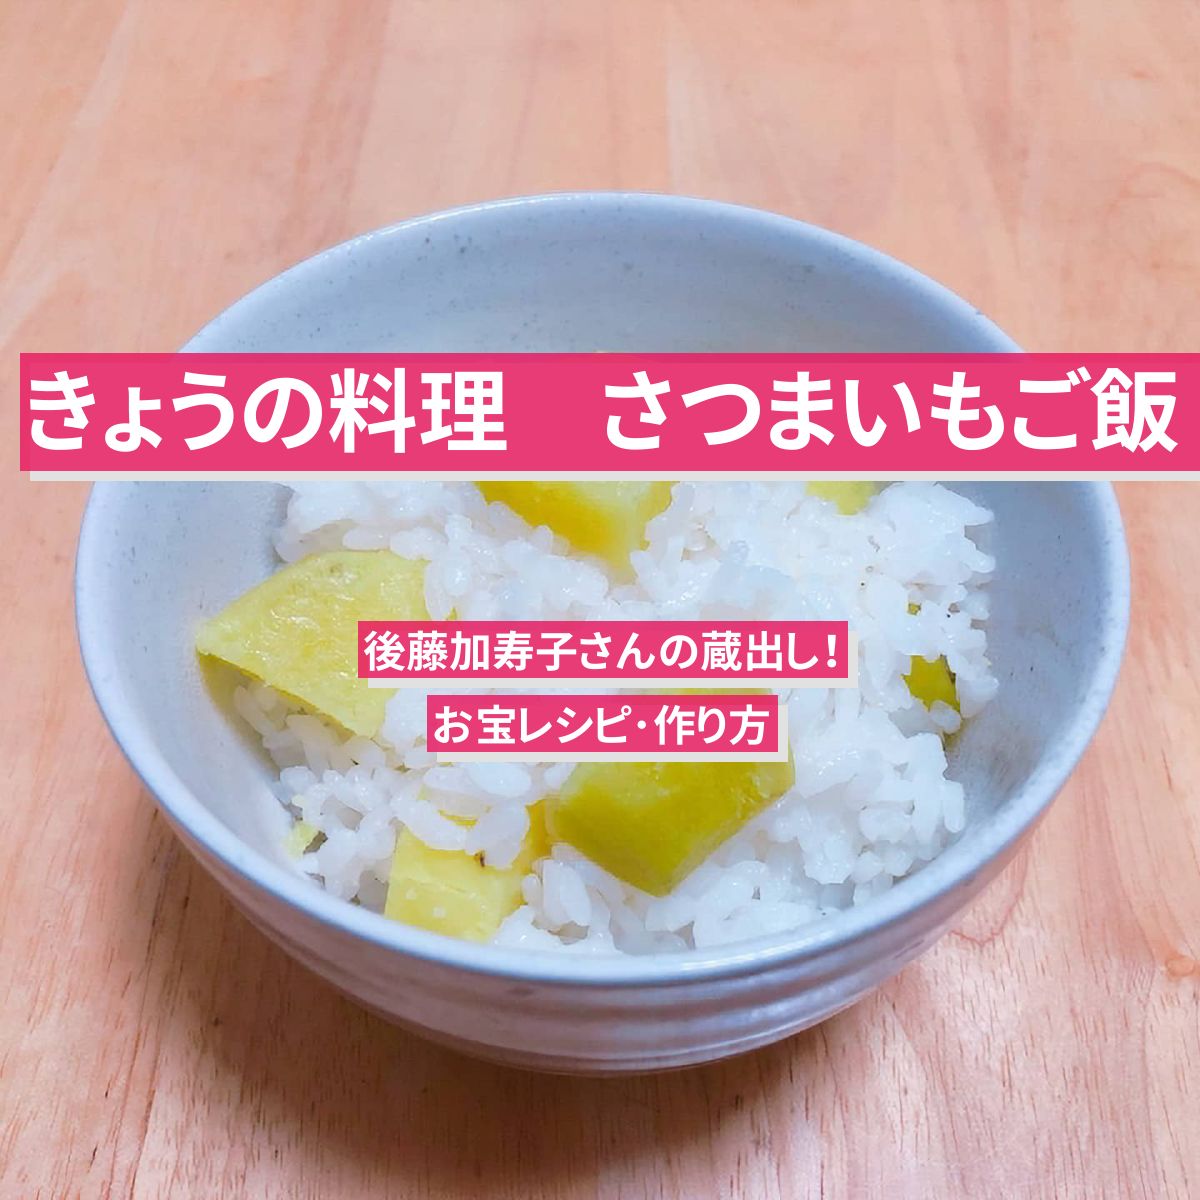 【きょうの料理】『さつまいもご飯』後藤加寿子さんの蔵出しレシピ･作り方